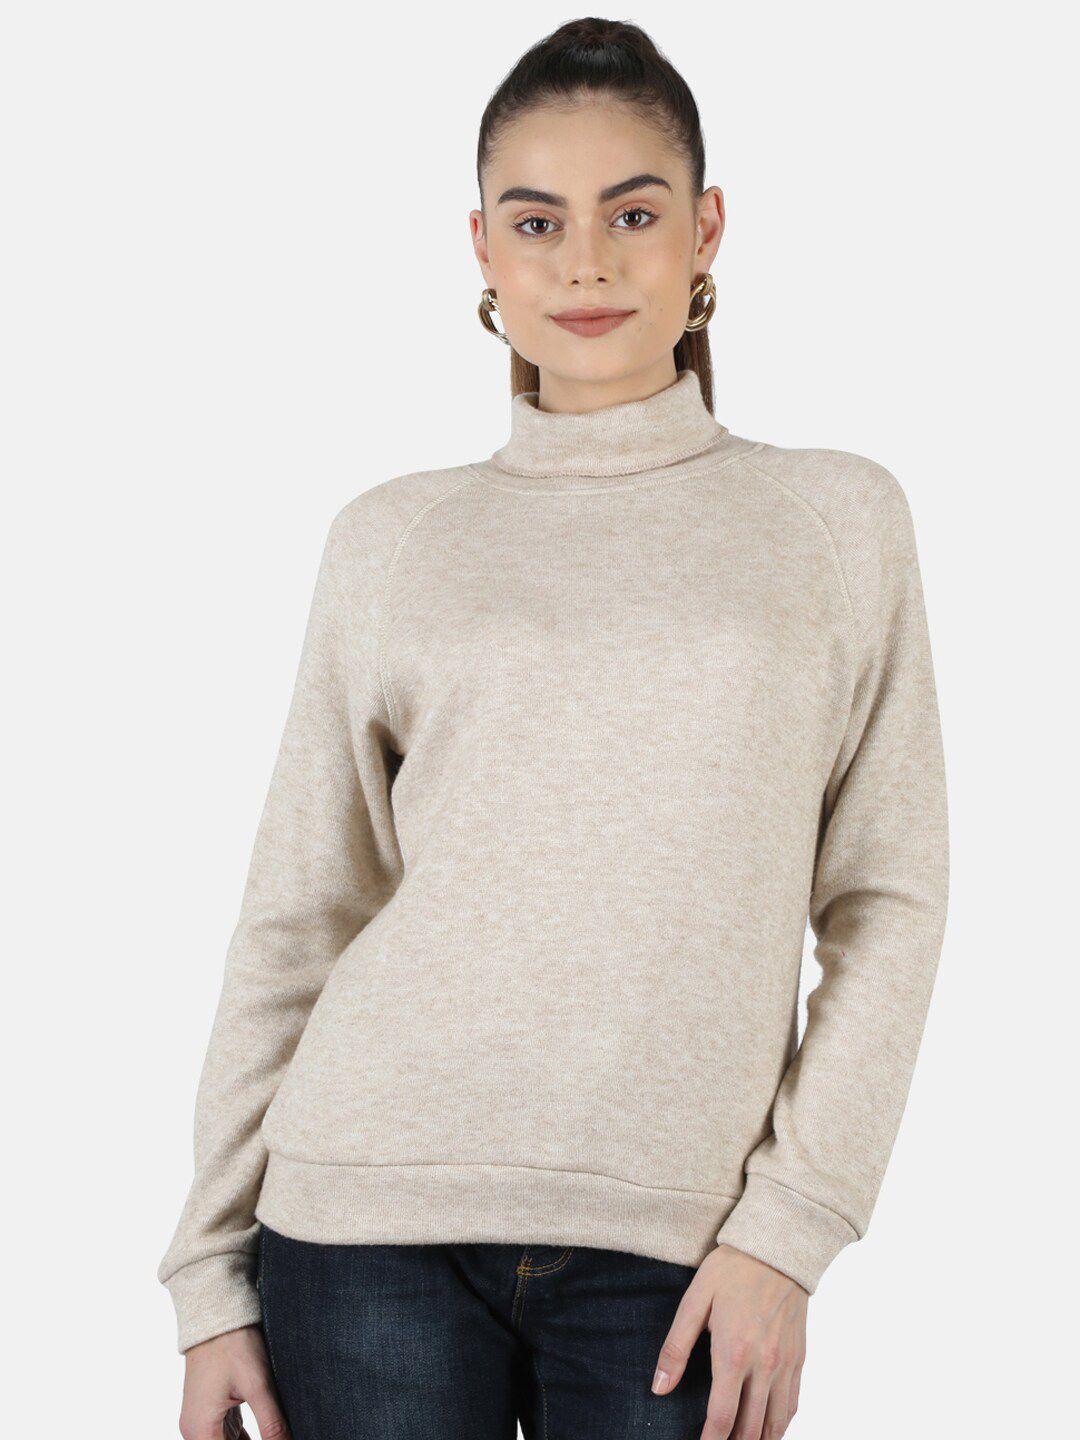 monte carlo women pullover wool sweater